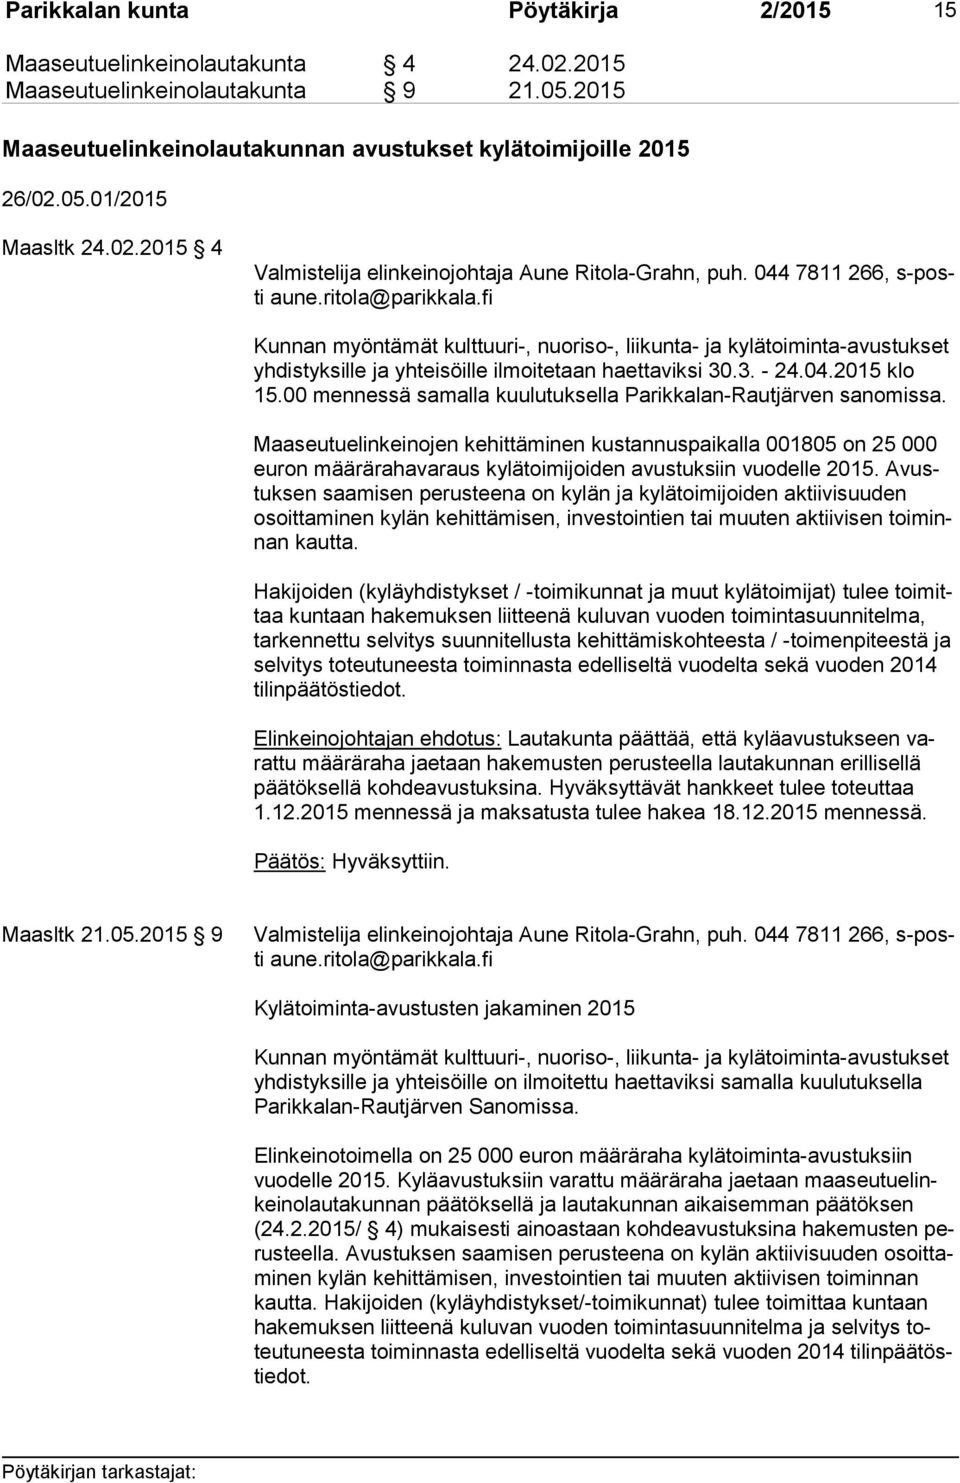 fi Kunnan myöntämät kulttuuri-, nuoriso-, liikunta- ja kylätoiminta-avustukset yh dis tyk sil le ja yhteisöille ilmoitetaan haettaviksi 30.3. - 24.04.2015 klo 15.